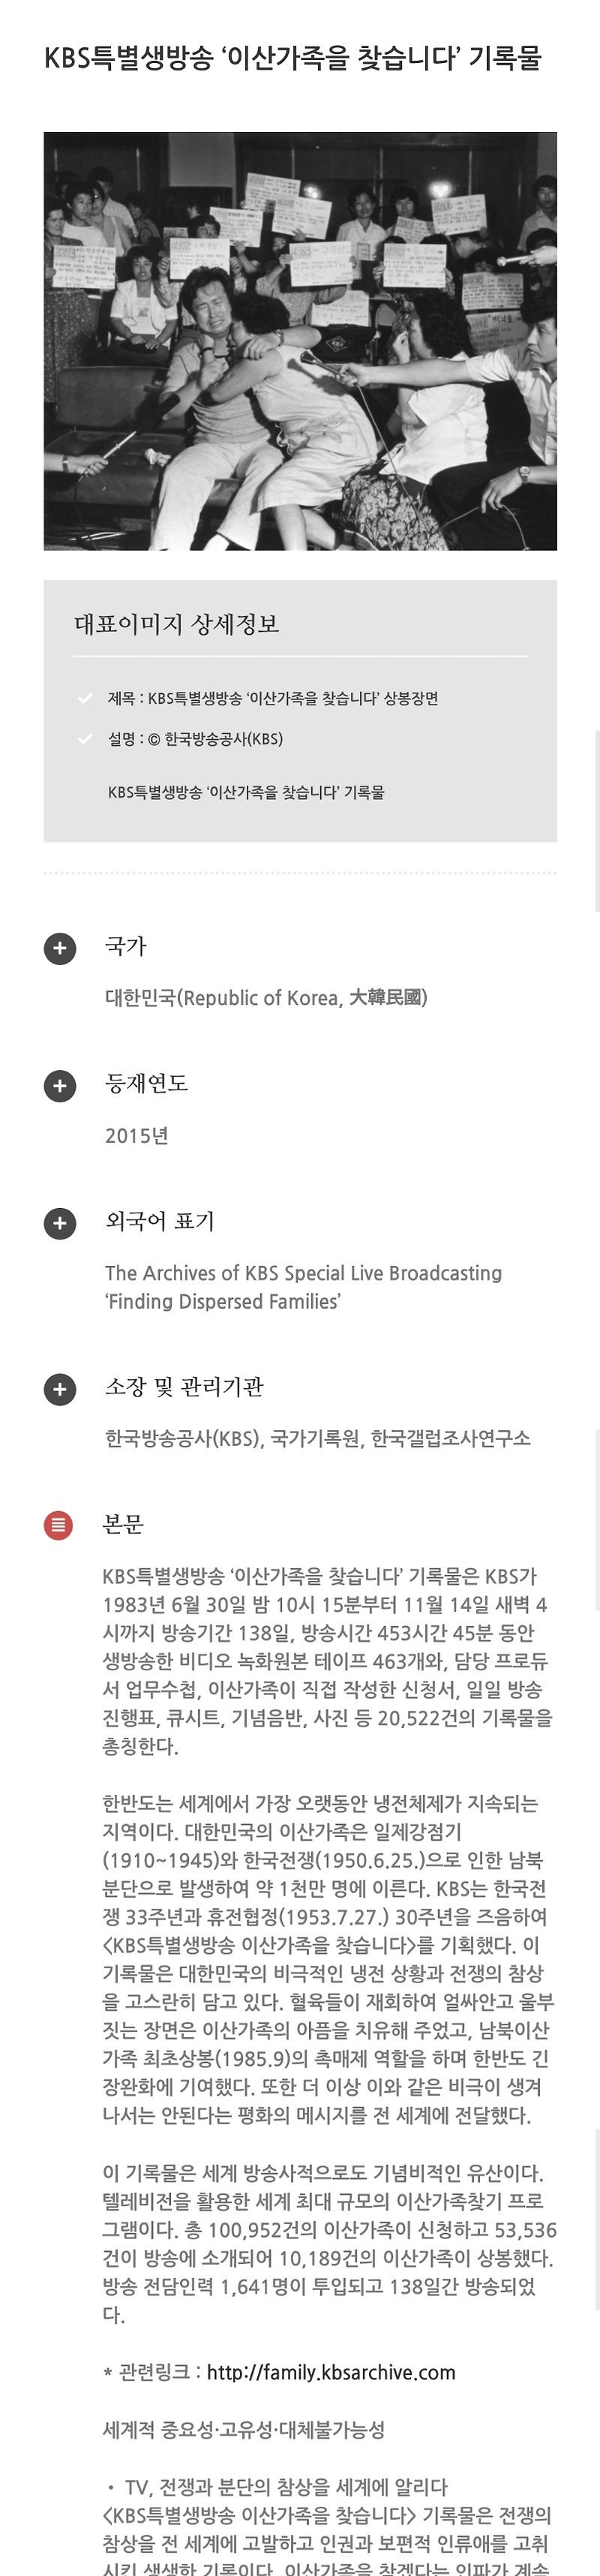 눈물나는 유네스코세계기록유산이 된 한국방송